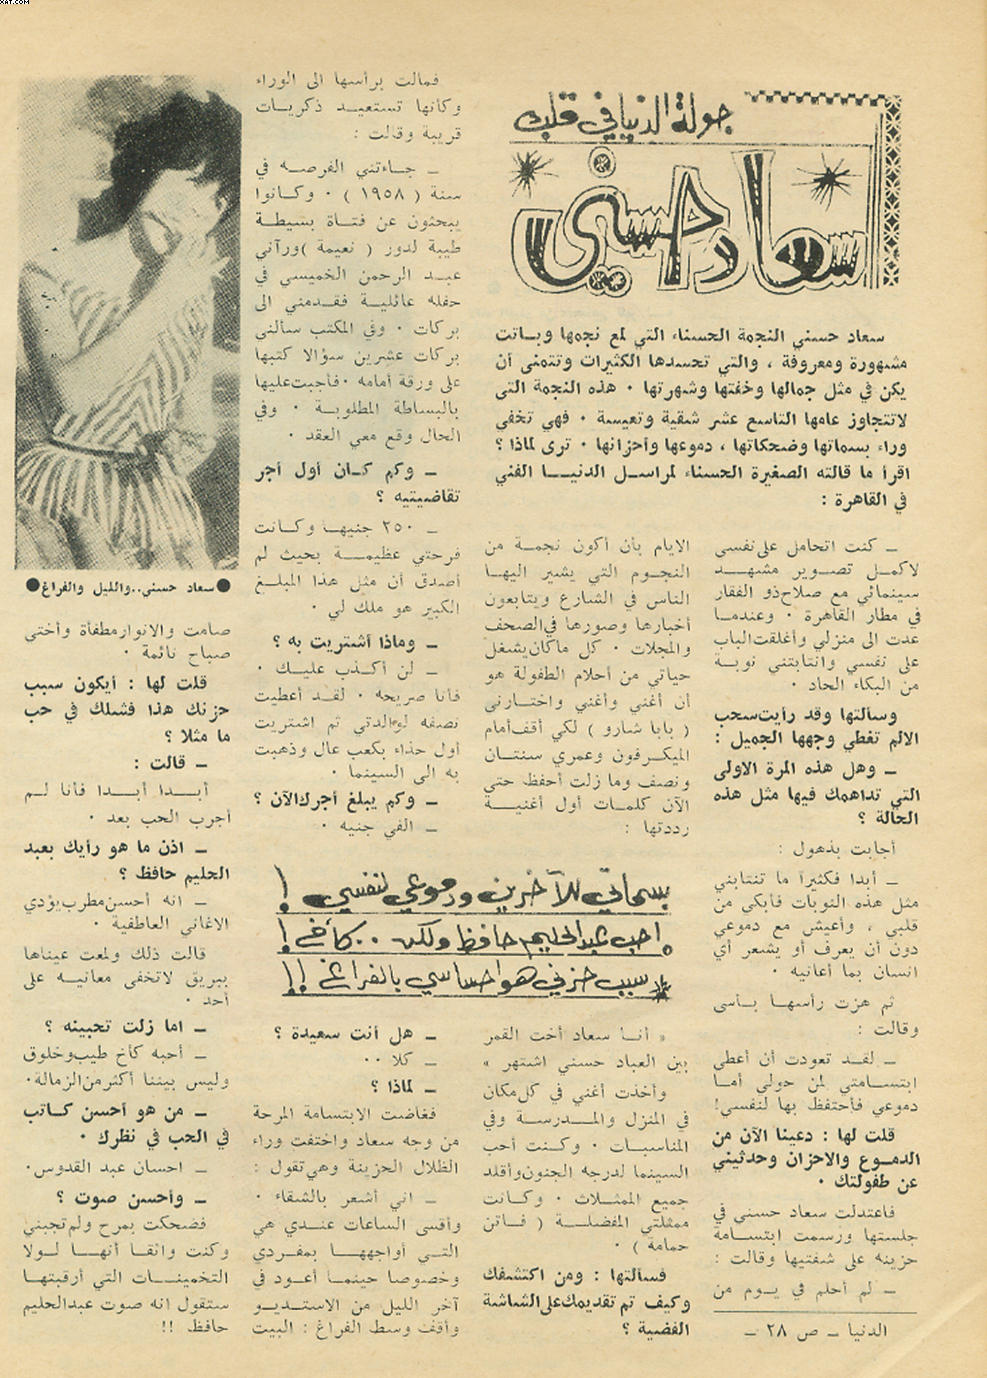 حوار صحفي : جولة الدنيا في قلب "سعاد حسني" 1963 م Yiao_a10